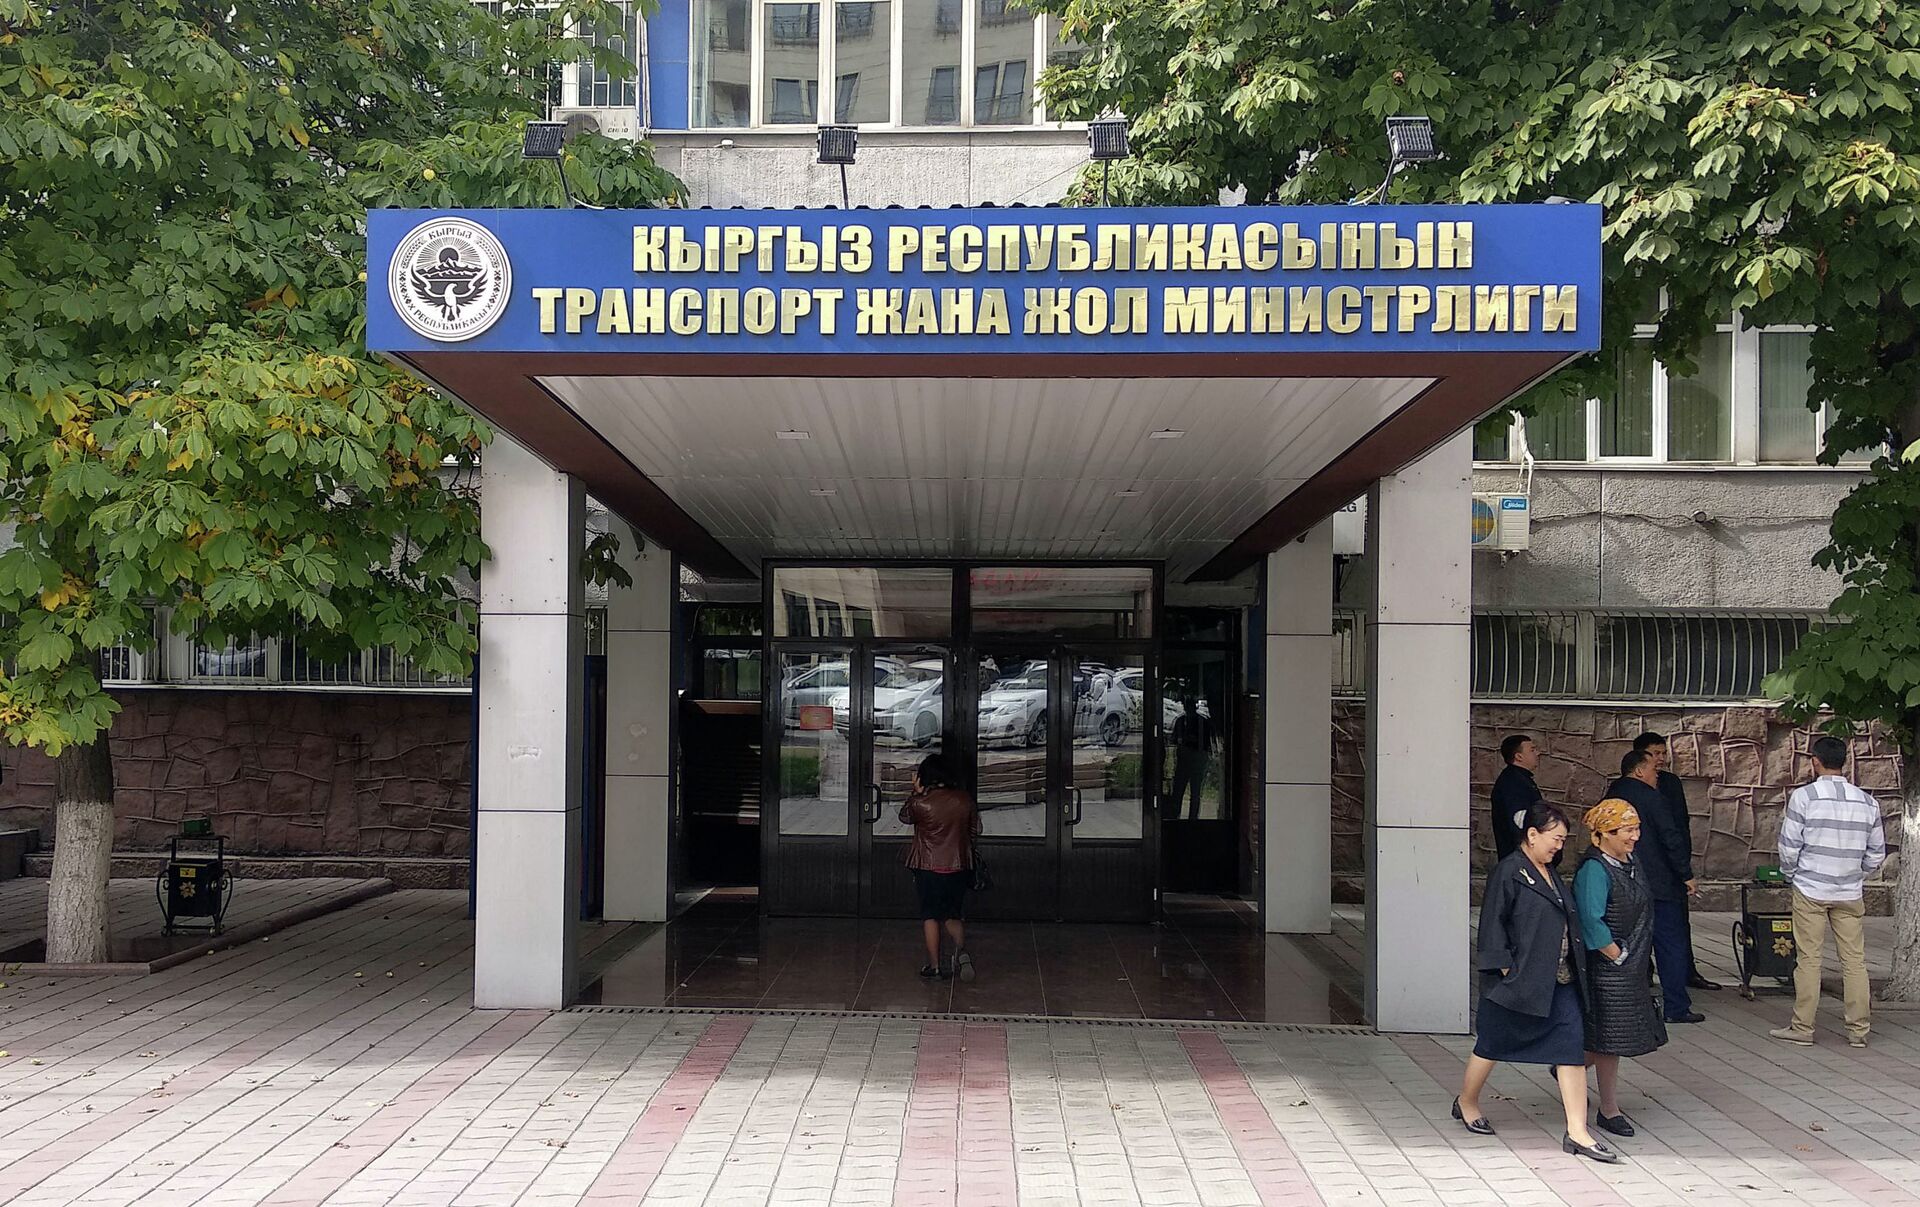 Министерство транспорта Кыргызской Республики